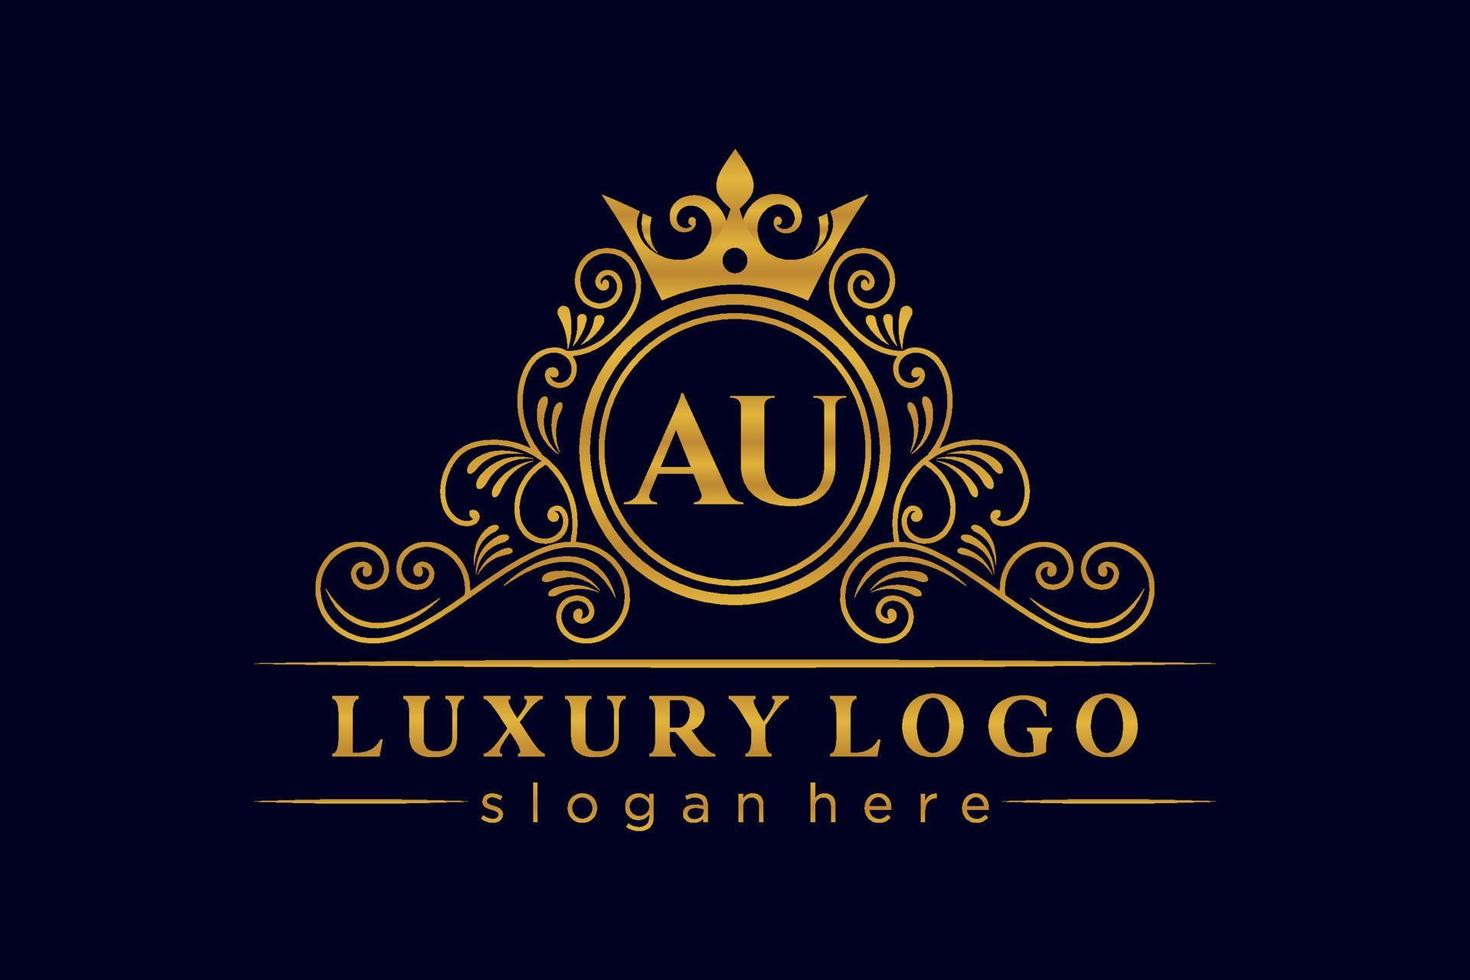 AU Initial Letter Gold calligraphic feminine floral hand drawn heraldic monogram antique vintage style luxury logo design Premium Vector